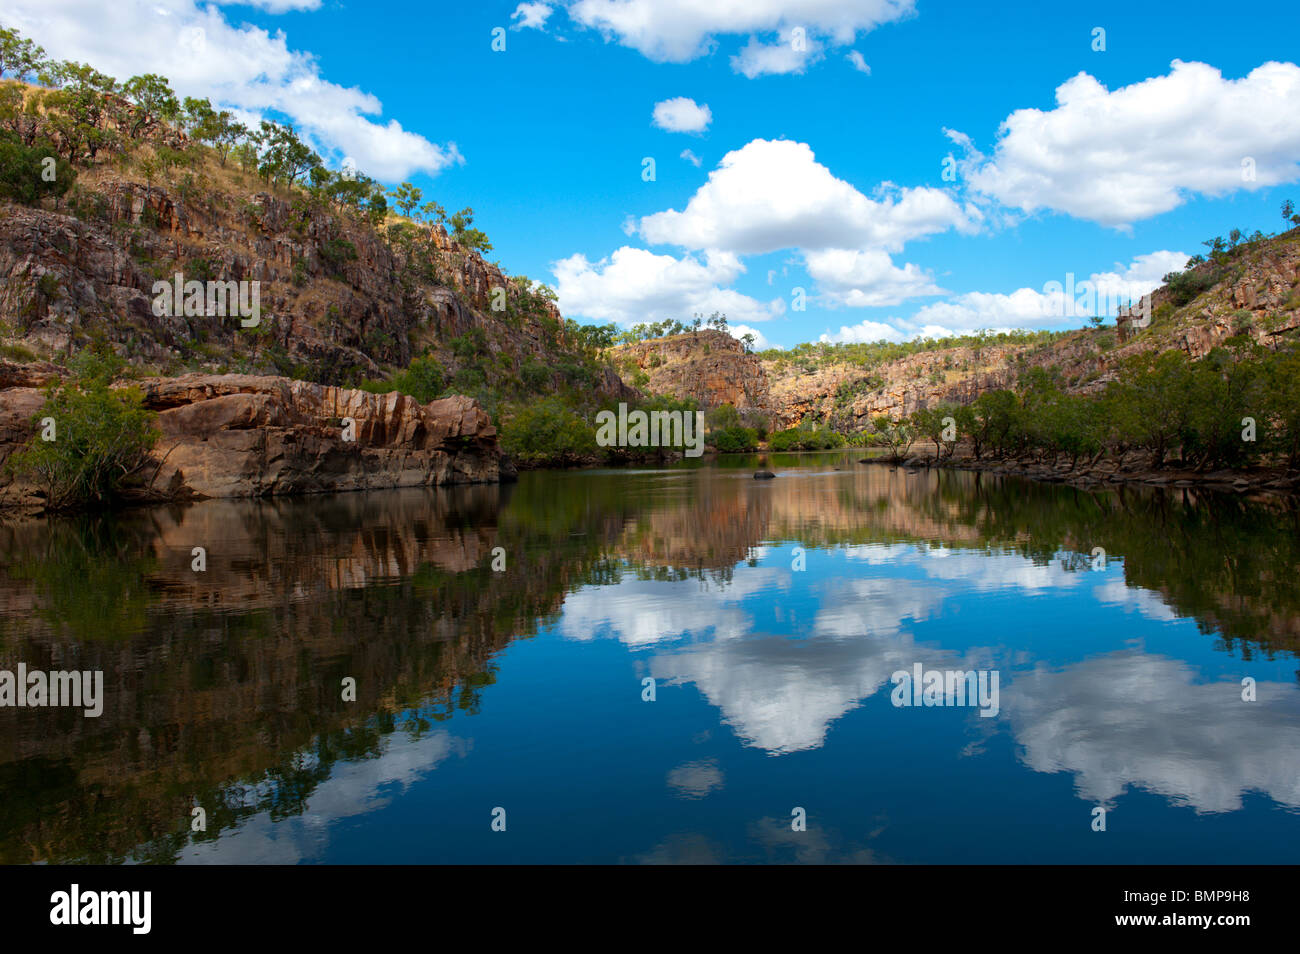 Katherine Gorge National Park, jetzt bekannt als Nitmiluk National Park ist eine beliebte Touristenattraktion im Northern Territory. Stockfoto